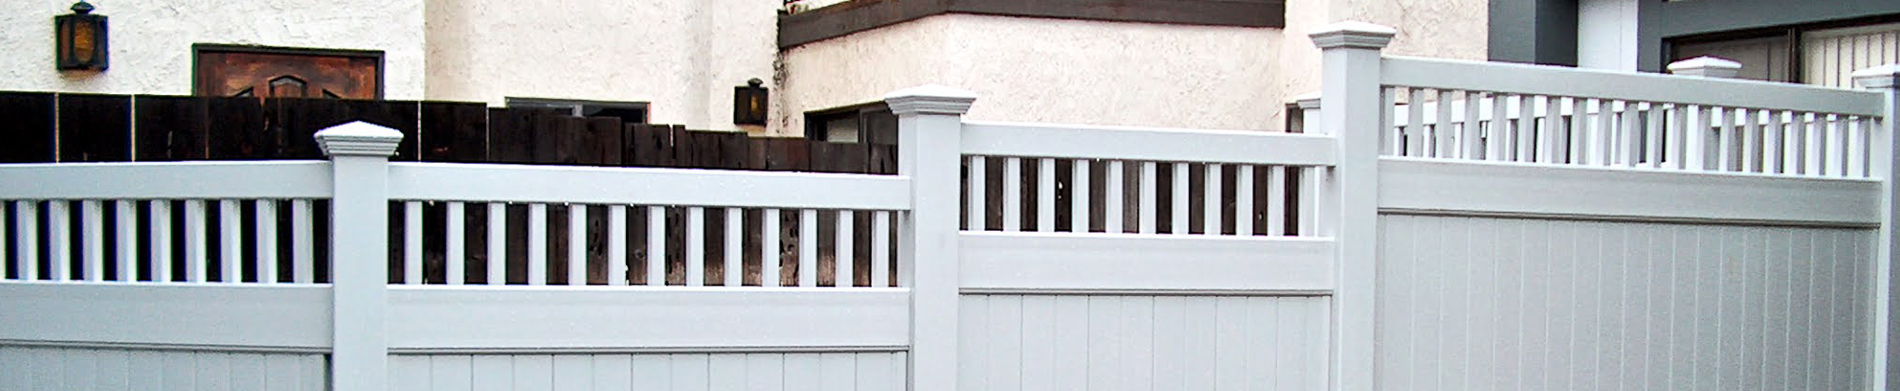 buy perimeter vinyl fencing